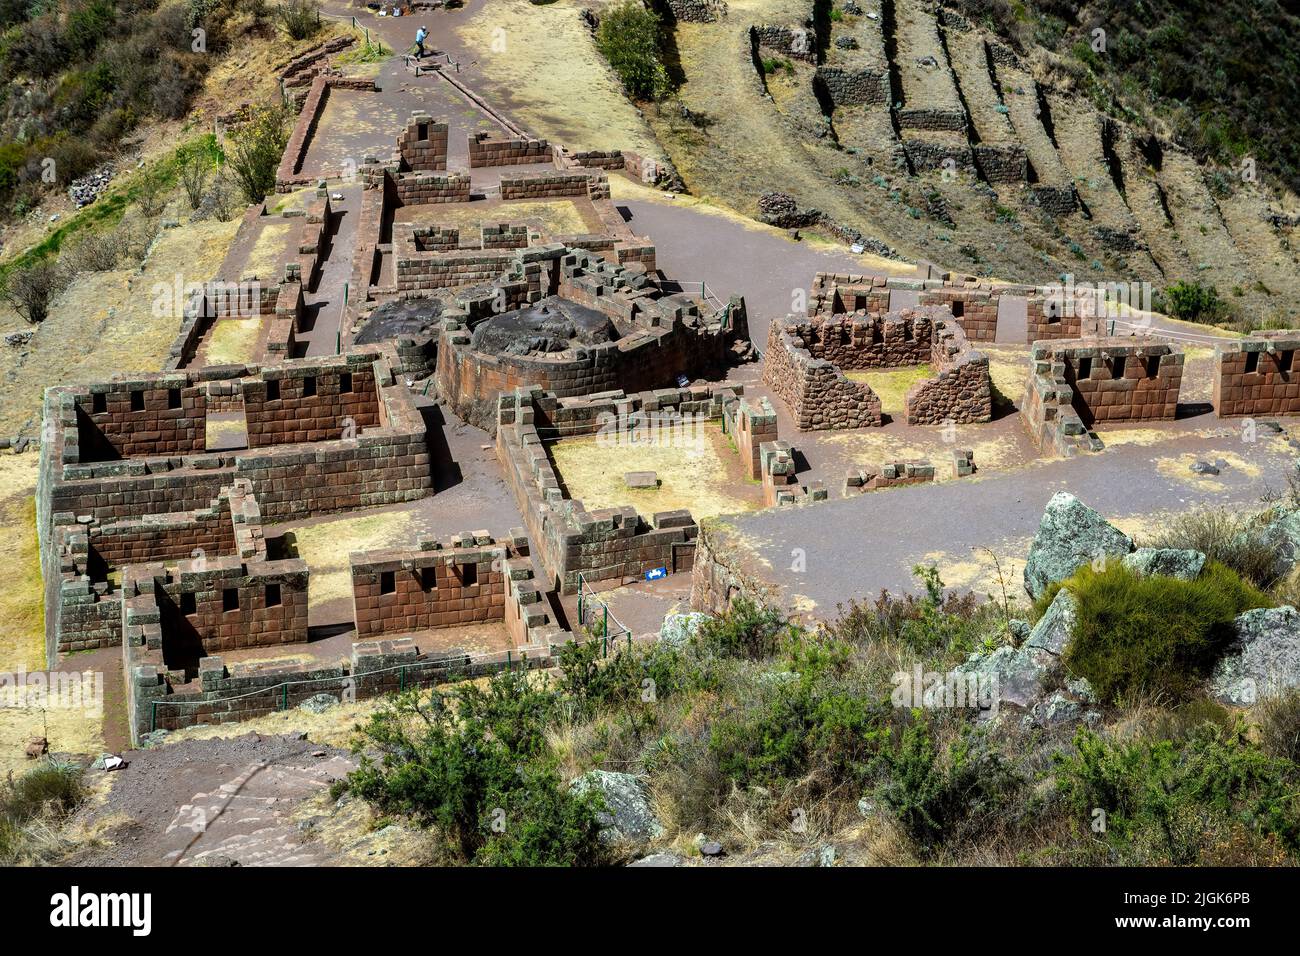 Edificios, Sector Intihuatana (centro religioso y astronómico), ruinas incas de Pisac, Pisac, Cusco, Perú Foto de stock